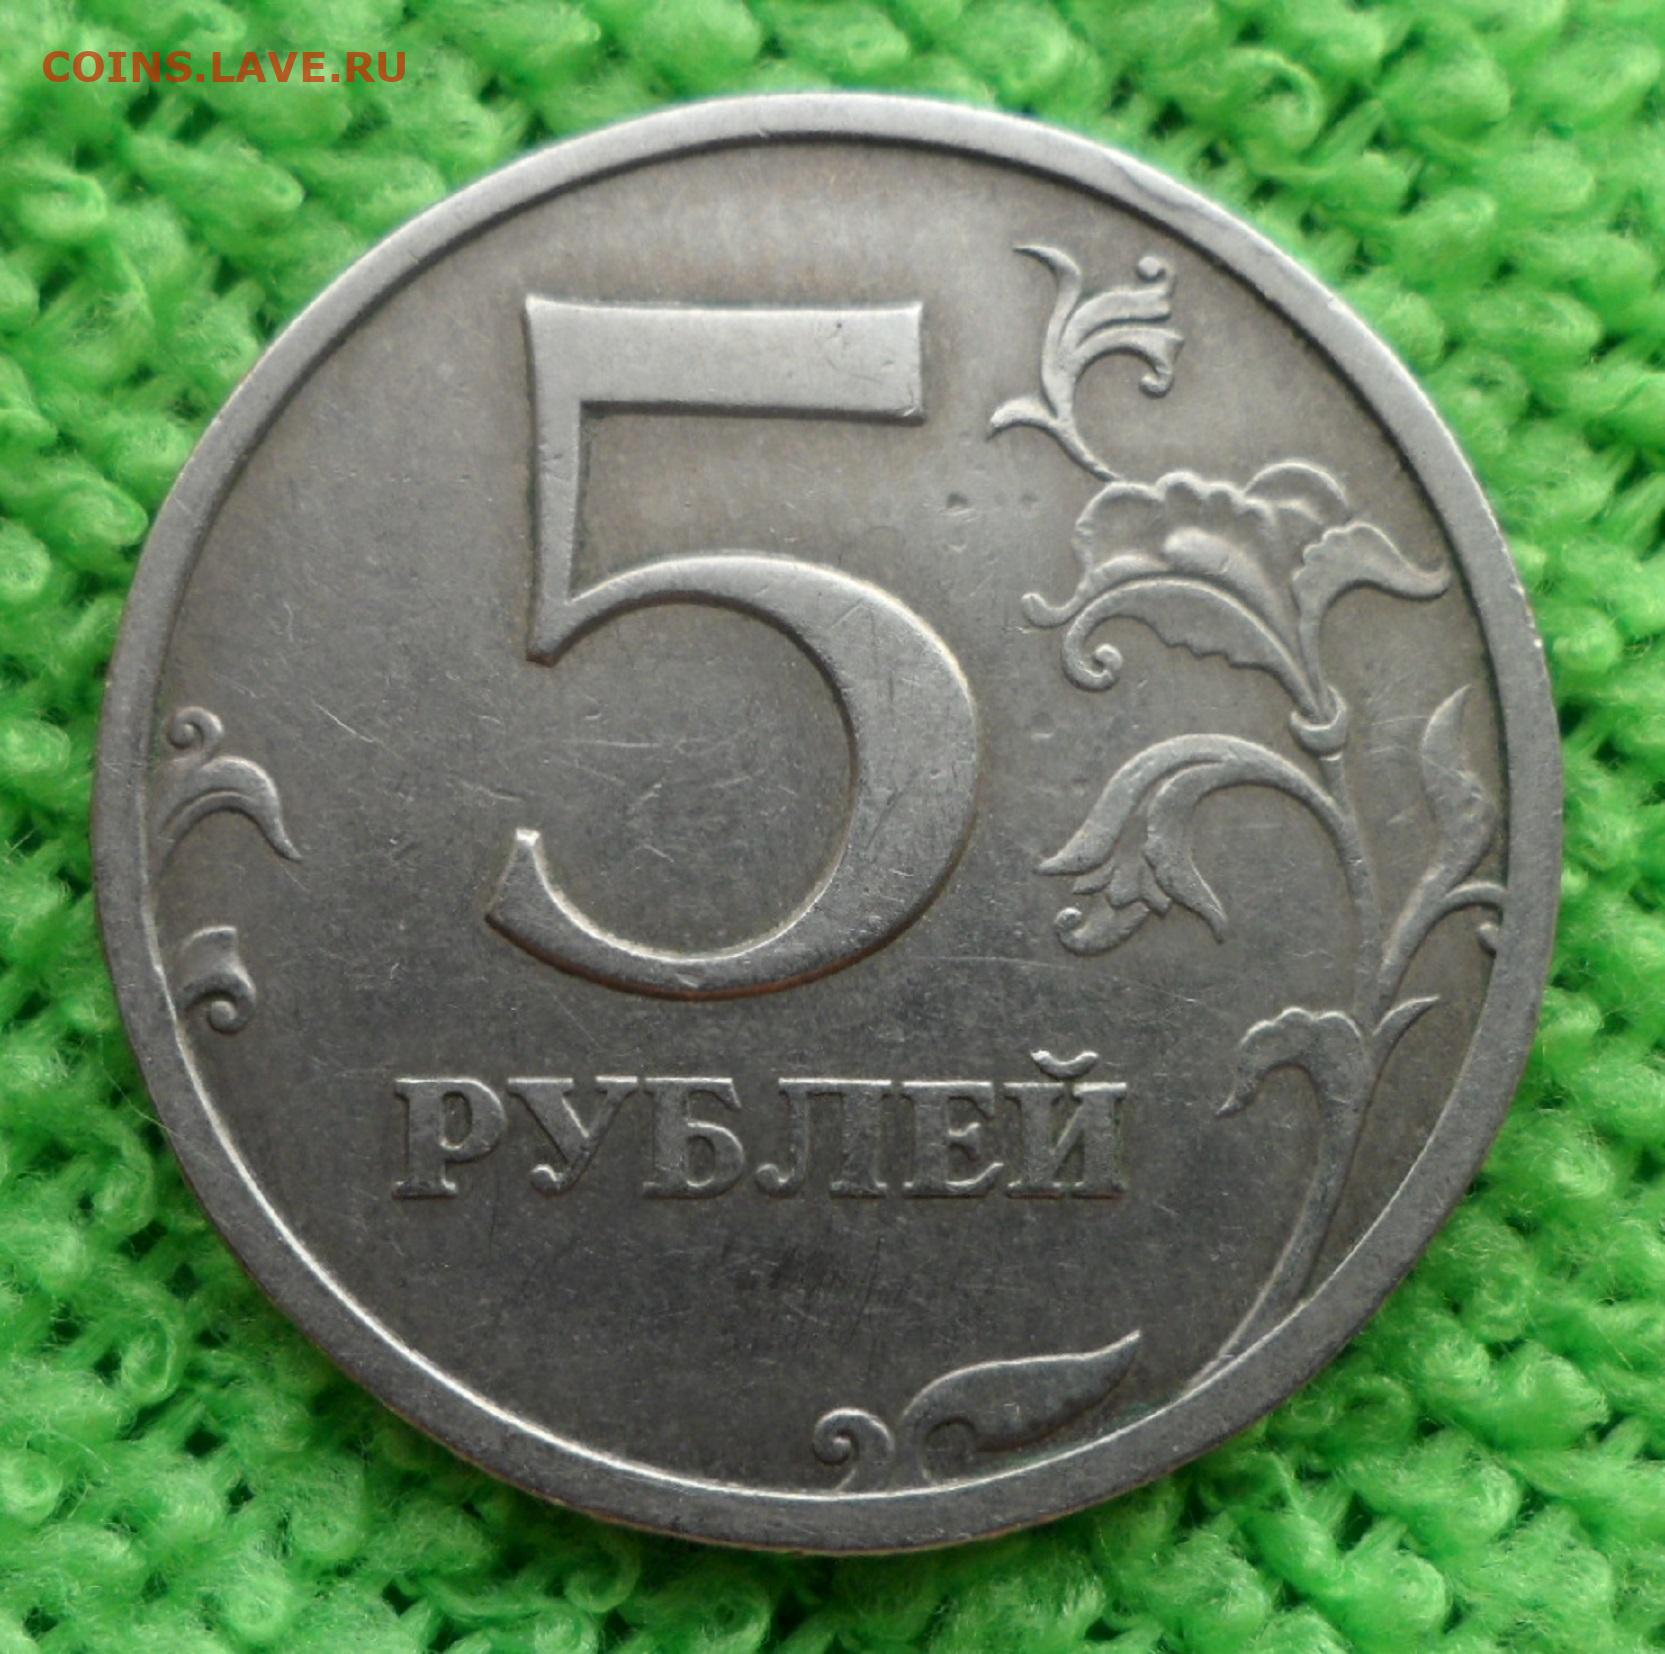 Россия 5 рублей 1997. 5 Рублей 1997г. 5 Рублей 1805.